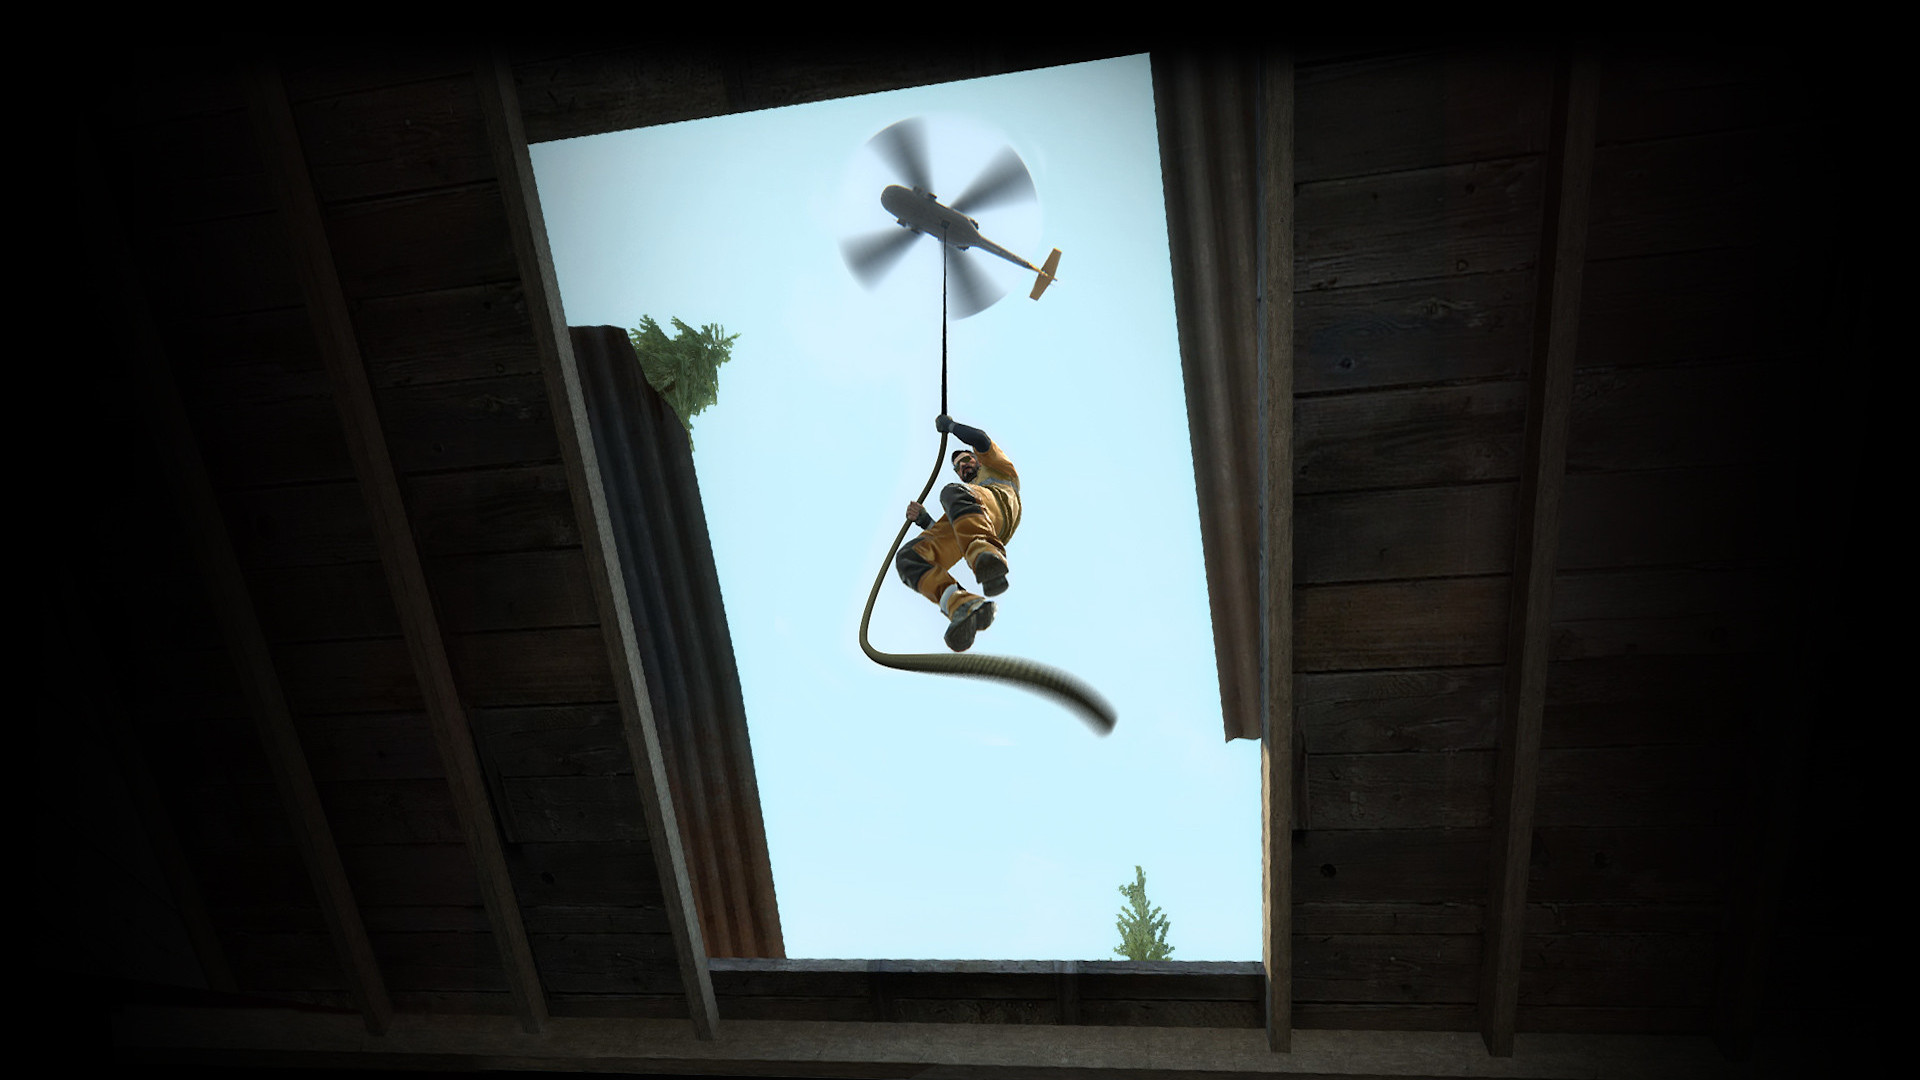 बेस्ट बॅटल रॉयल गेम्स: ऑरेंज जंपसूटमधील एक माणूस सीएस मधील हेलिकॉप्टरमधून दोरी खाली उतरला: जीओएस डेंजर झोन